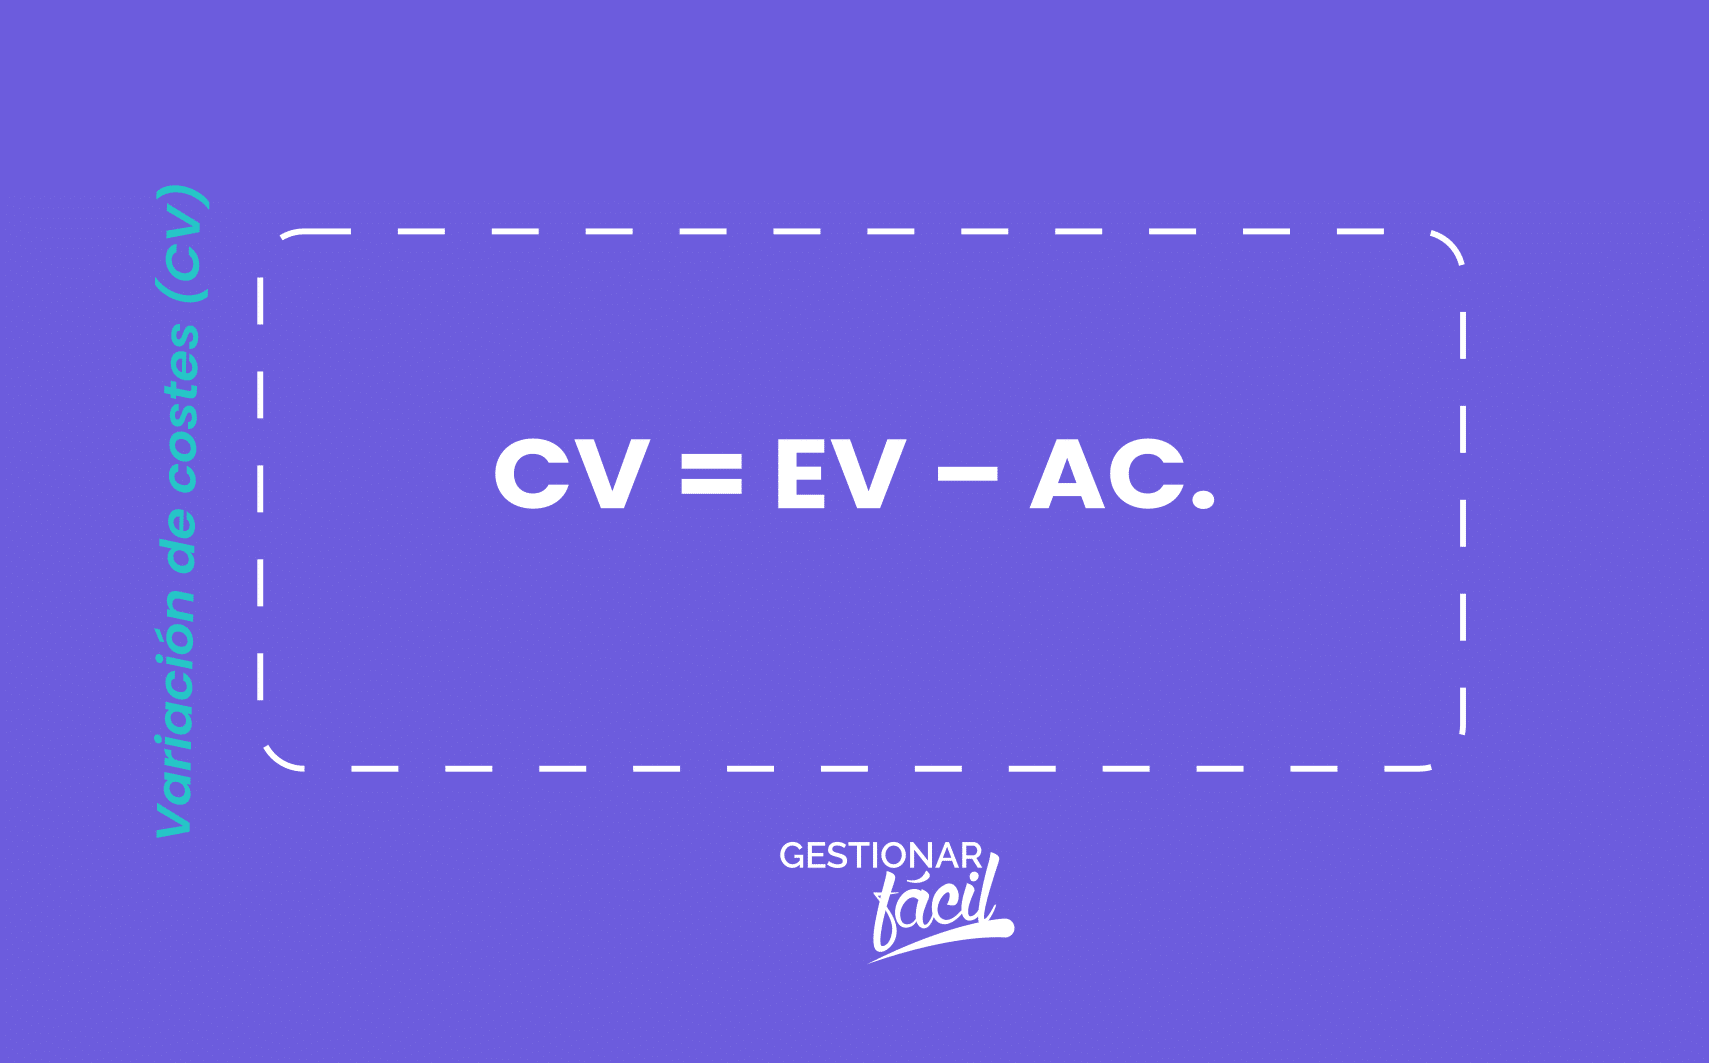 CV = EV – AC.